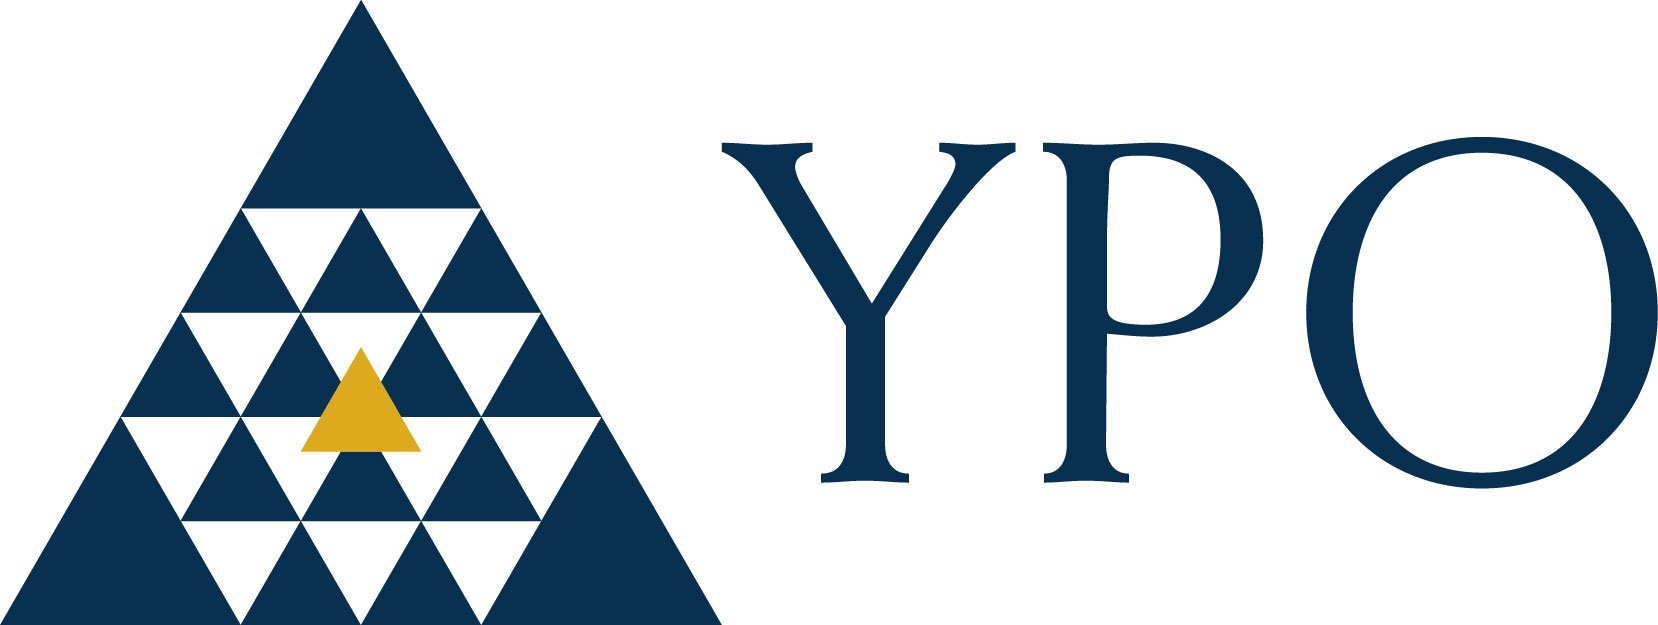 new_ypo_logo.jpg